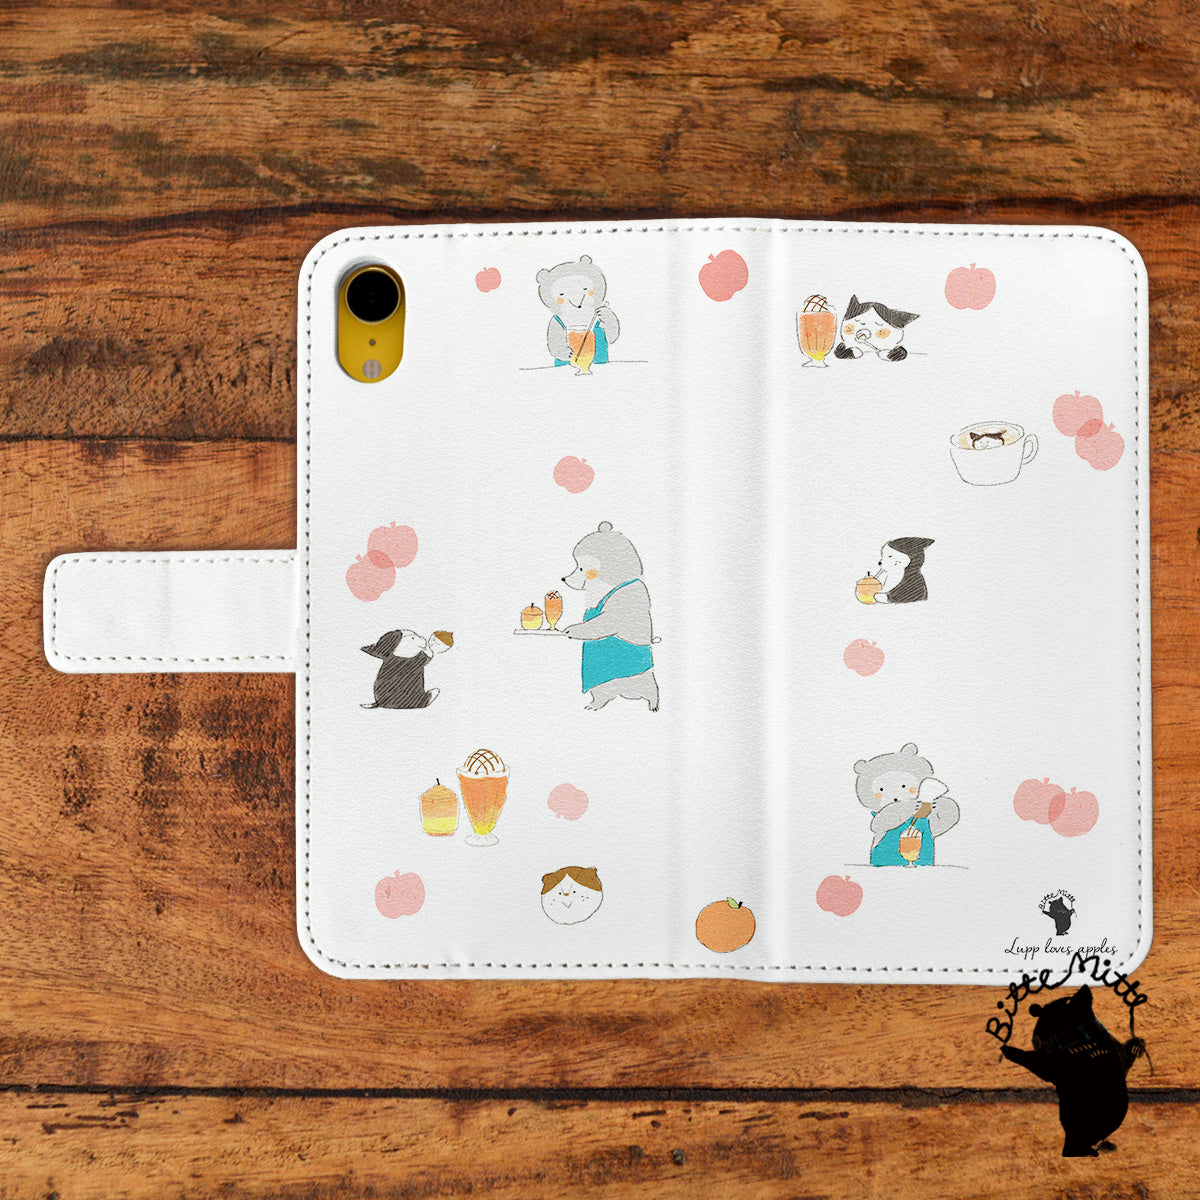 Bitte Mitte!ブランドのデザイン画を印刷したはめ込み式手帳型スマホケース「ヨルンとルップのりんごカフェ」のイメージ写真です。機種はiPhoneXRです。